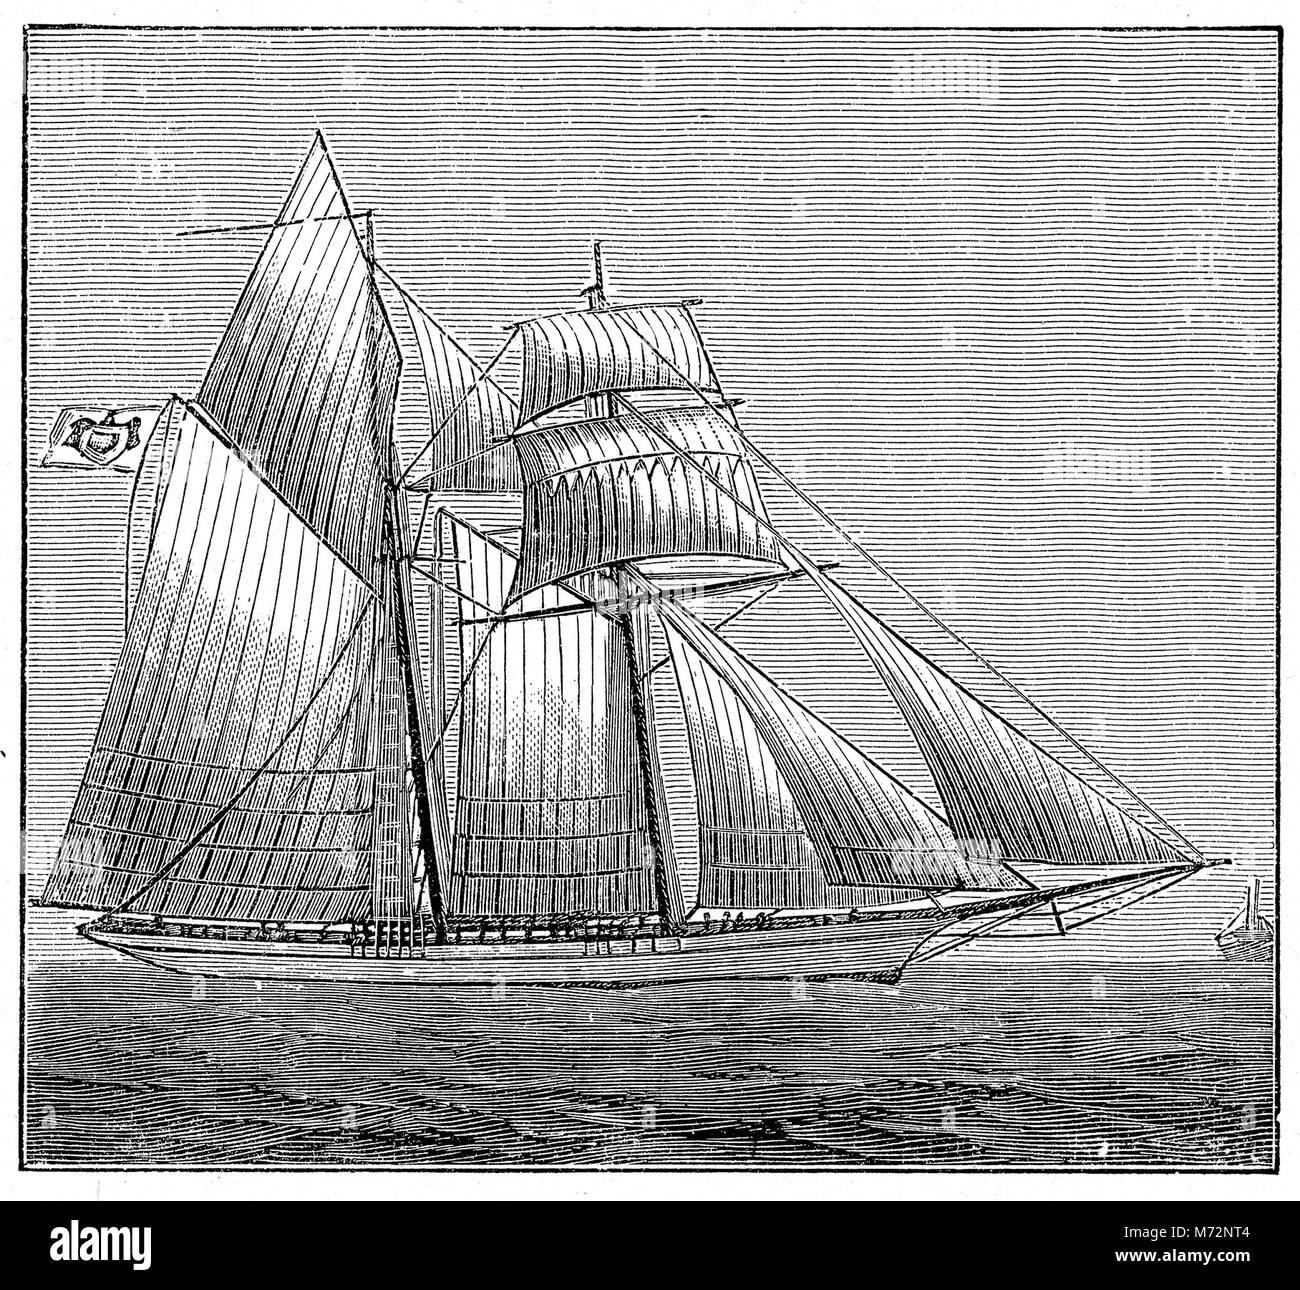 Incisione Vintage dell'Hirondelle 200-ton barca a vela, nave di esplorazione di Alberto I principe di Monaco per il suo viaggio come oceanografo al Mediterraneo, l'Antartide e per le Azzorre. Foto Stock